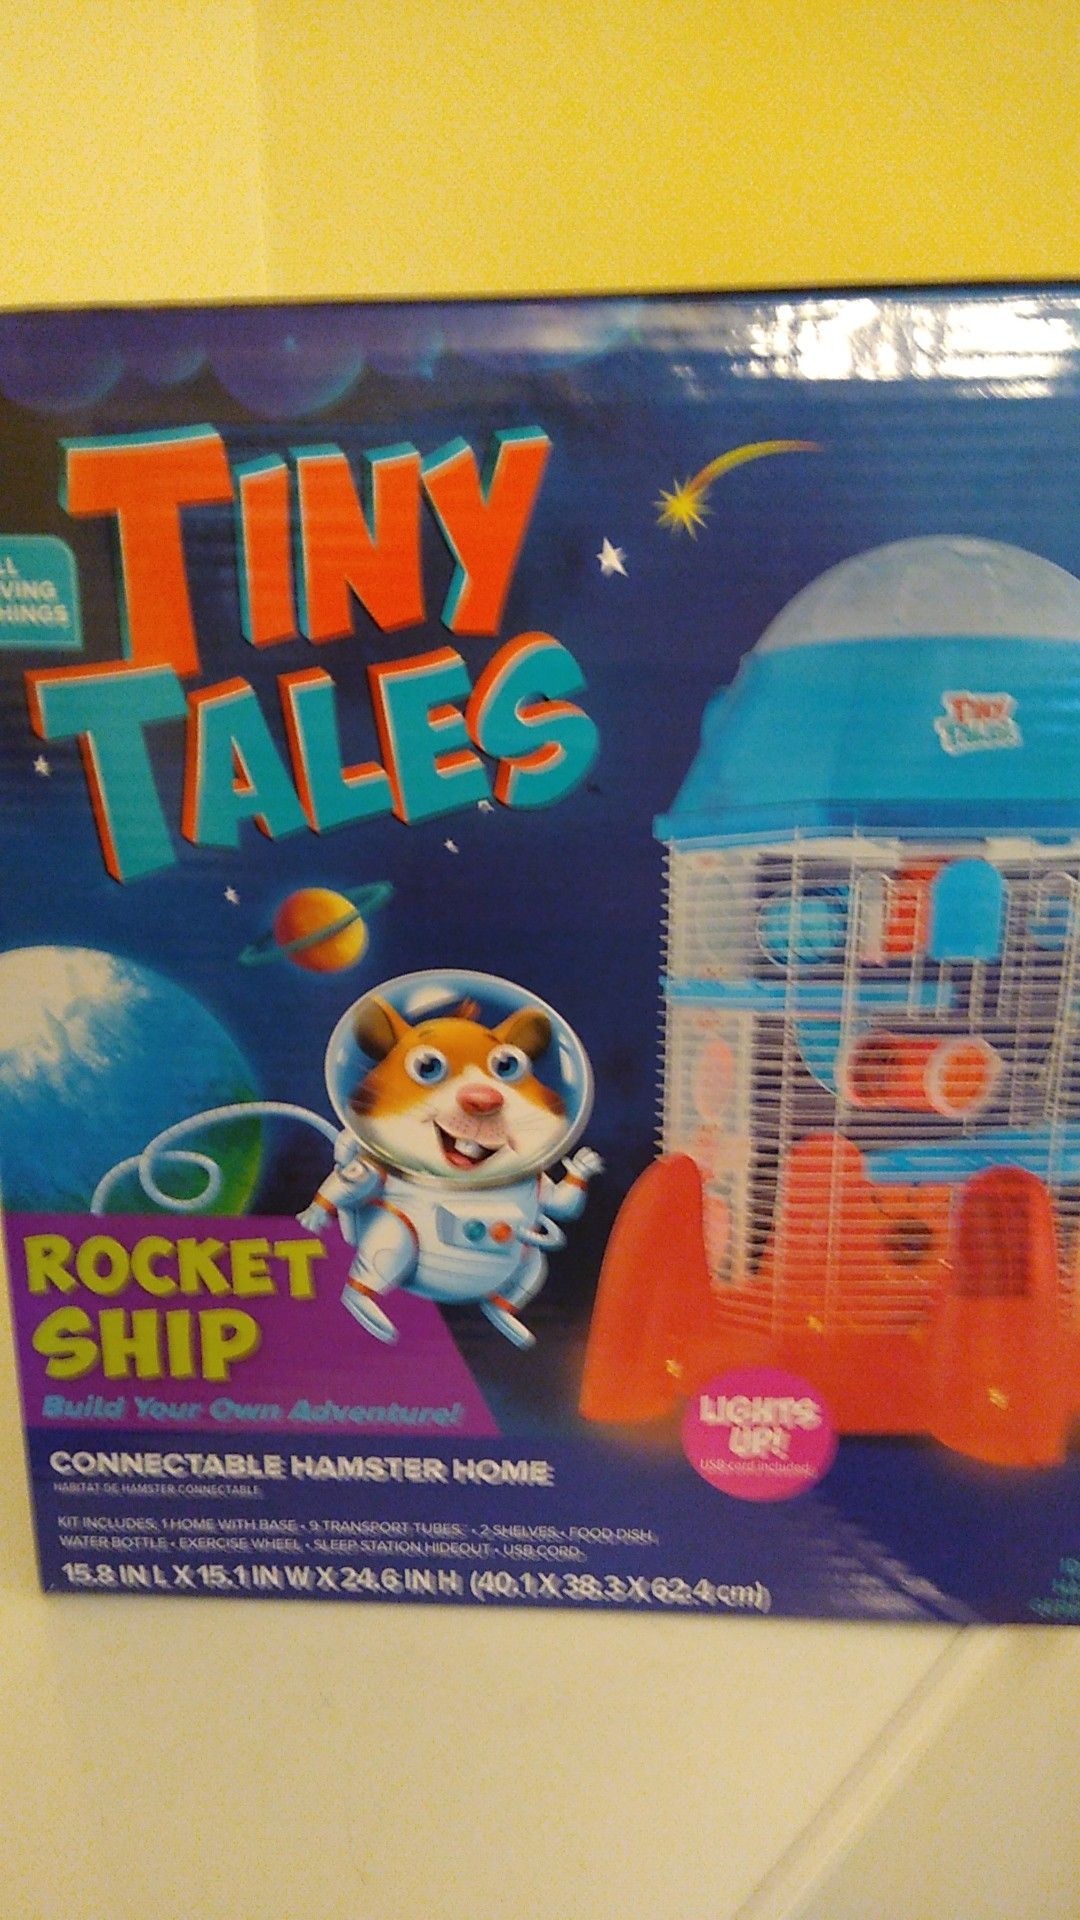 Tiny Tales rocket ship